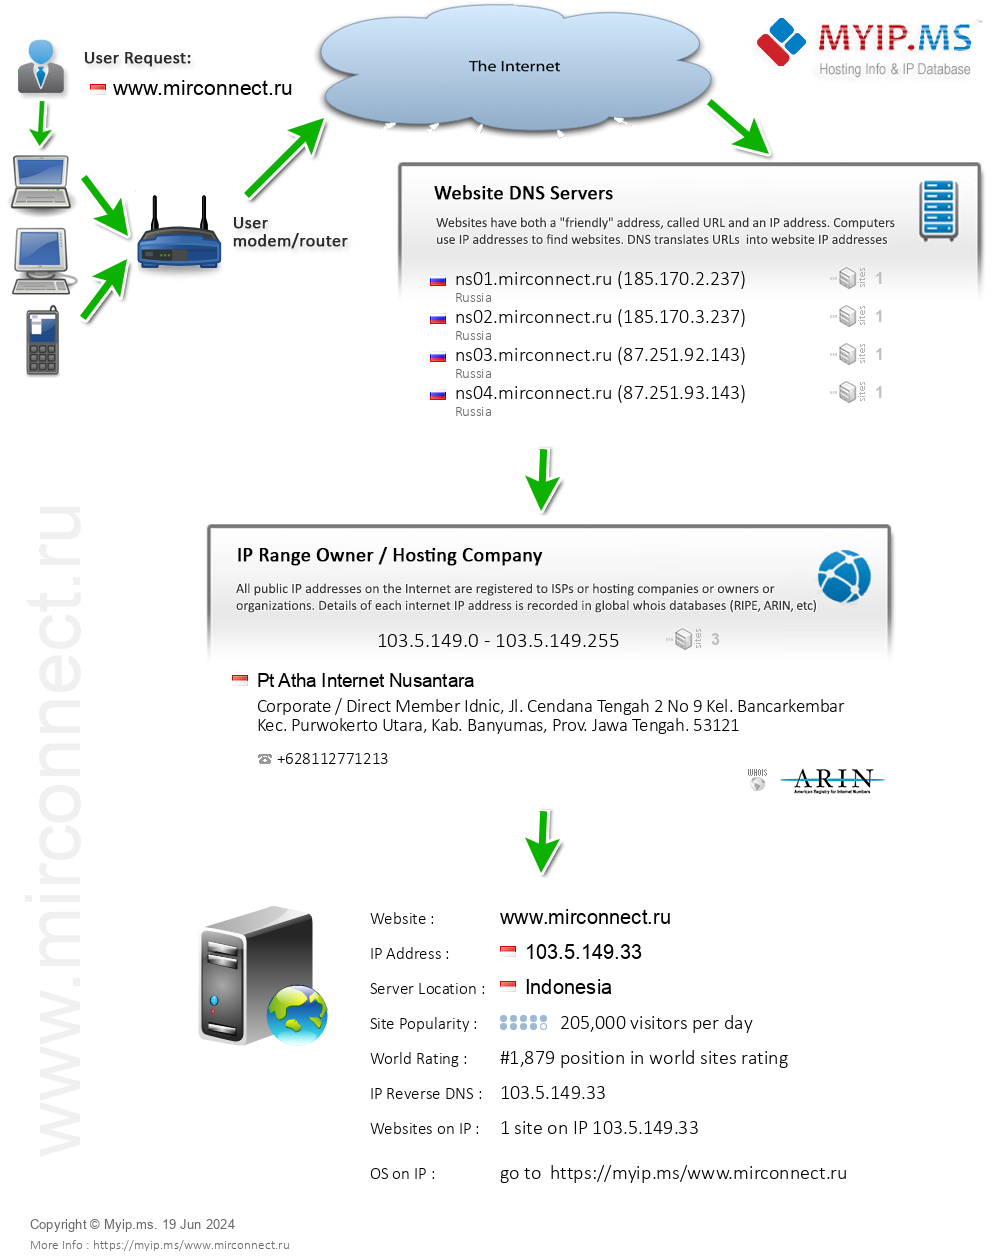 Mirconnect.ru - Website Hosting Visual IP Diagram